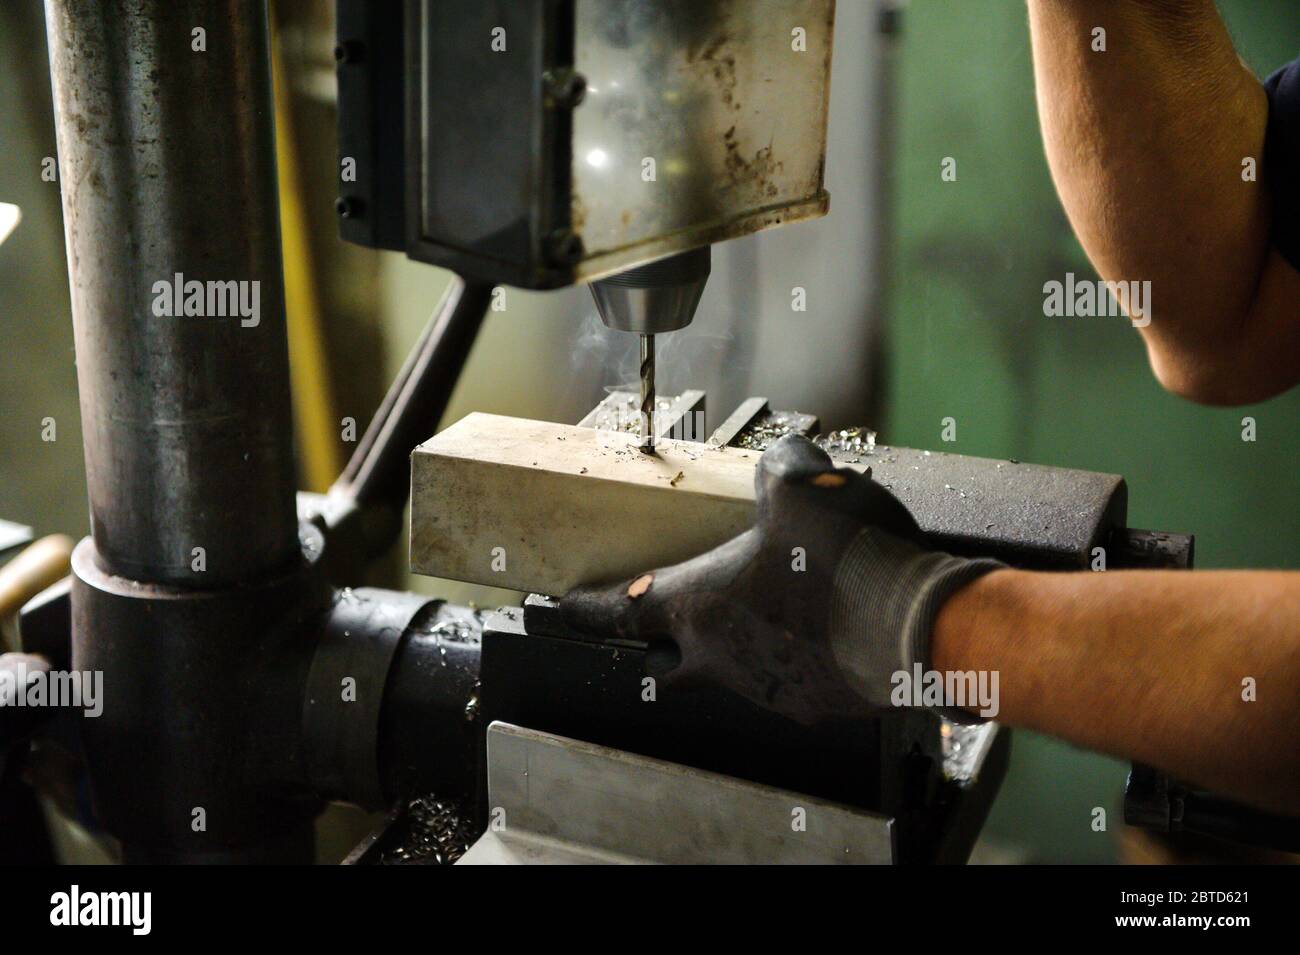 Arbeiter bohren einen Aluminiumblock auf einer großen industriellen Bohrmaschine in einer Werkstatt in der Nähe seiner Handschuhhandschuhen Stockfoto